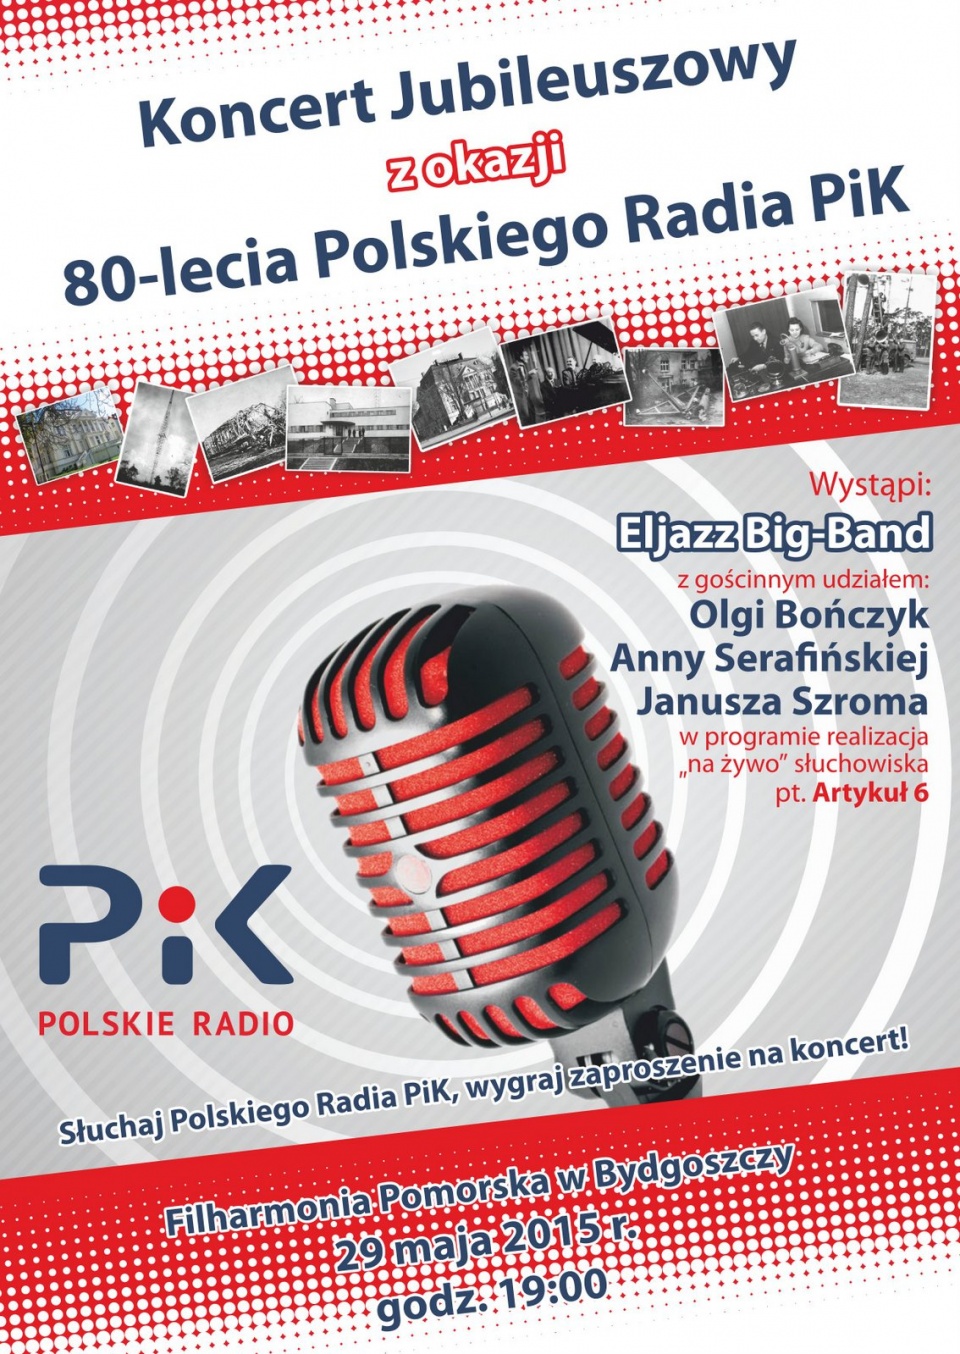 Plakat Koncertu Jubileuszowego Polskiego Radia PiK